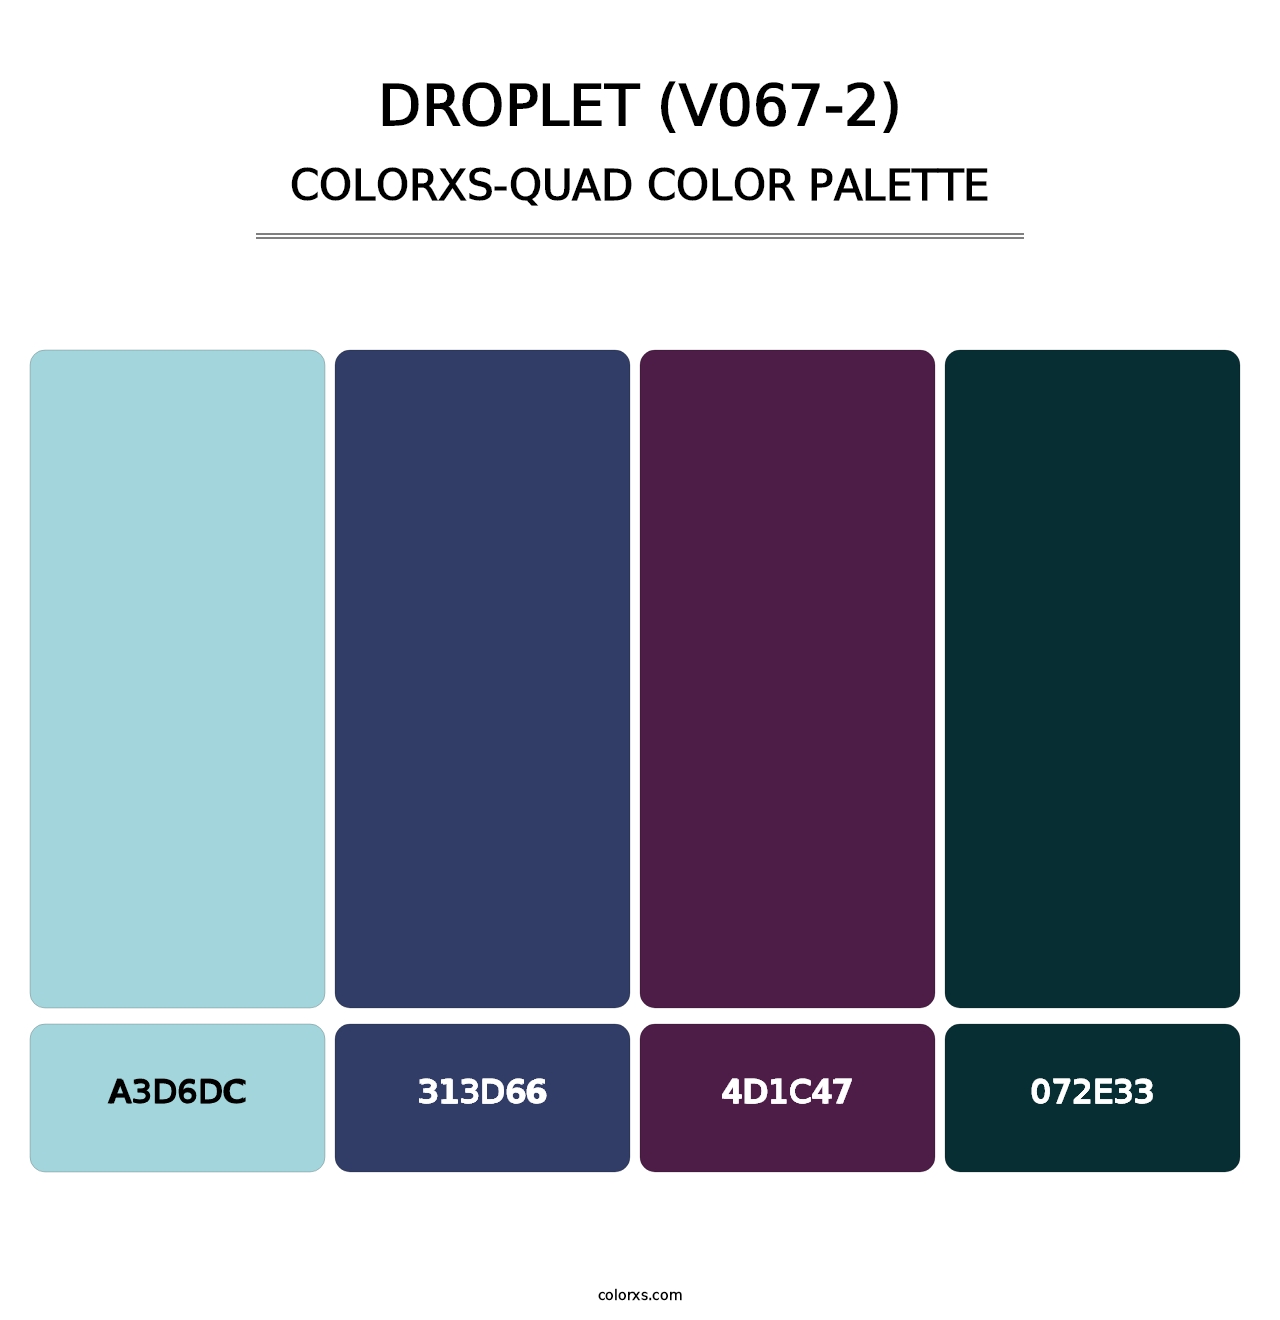 Droplet (V067-2) - Colorxs Quad Palette